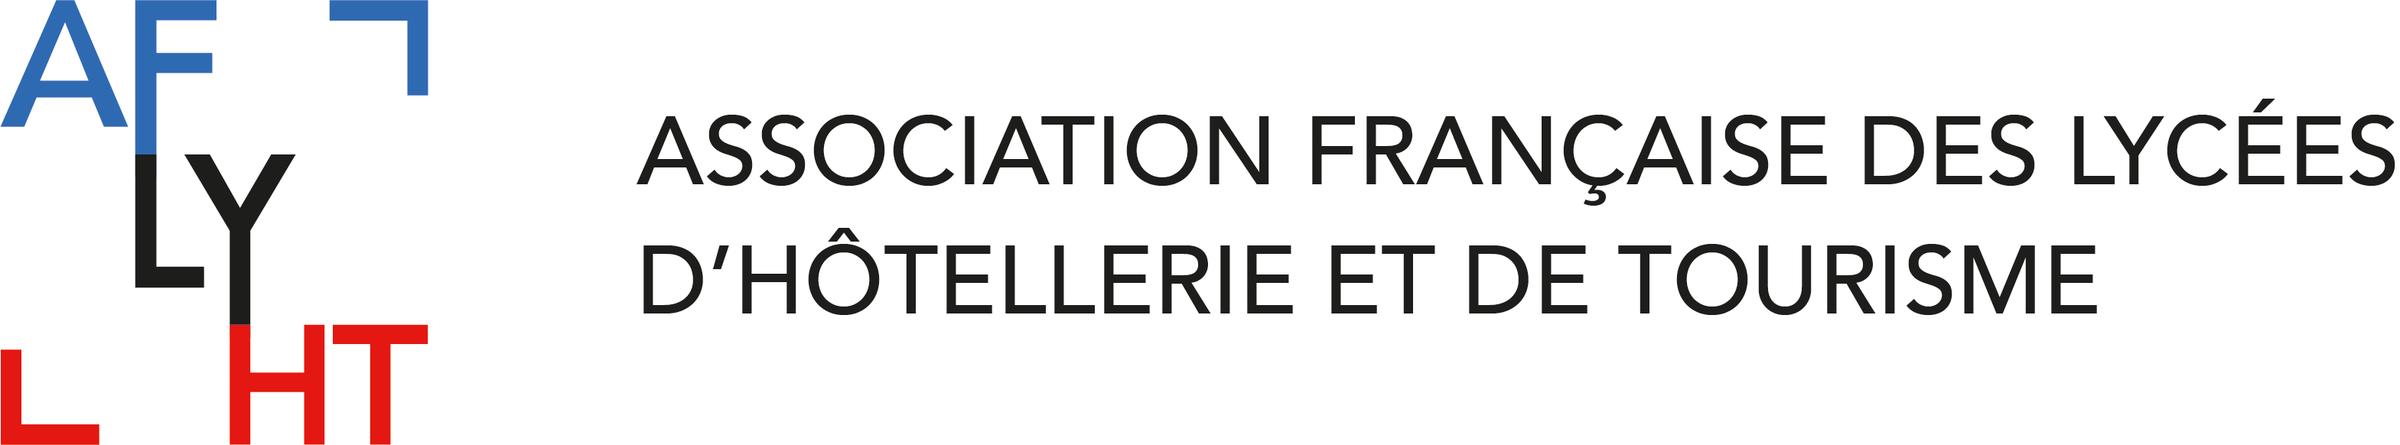 Association Française des Lycées d'Hôtellerie et de Tourisme